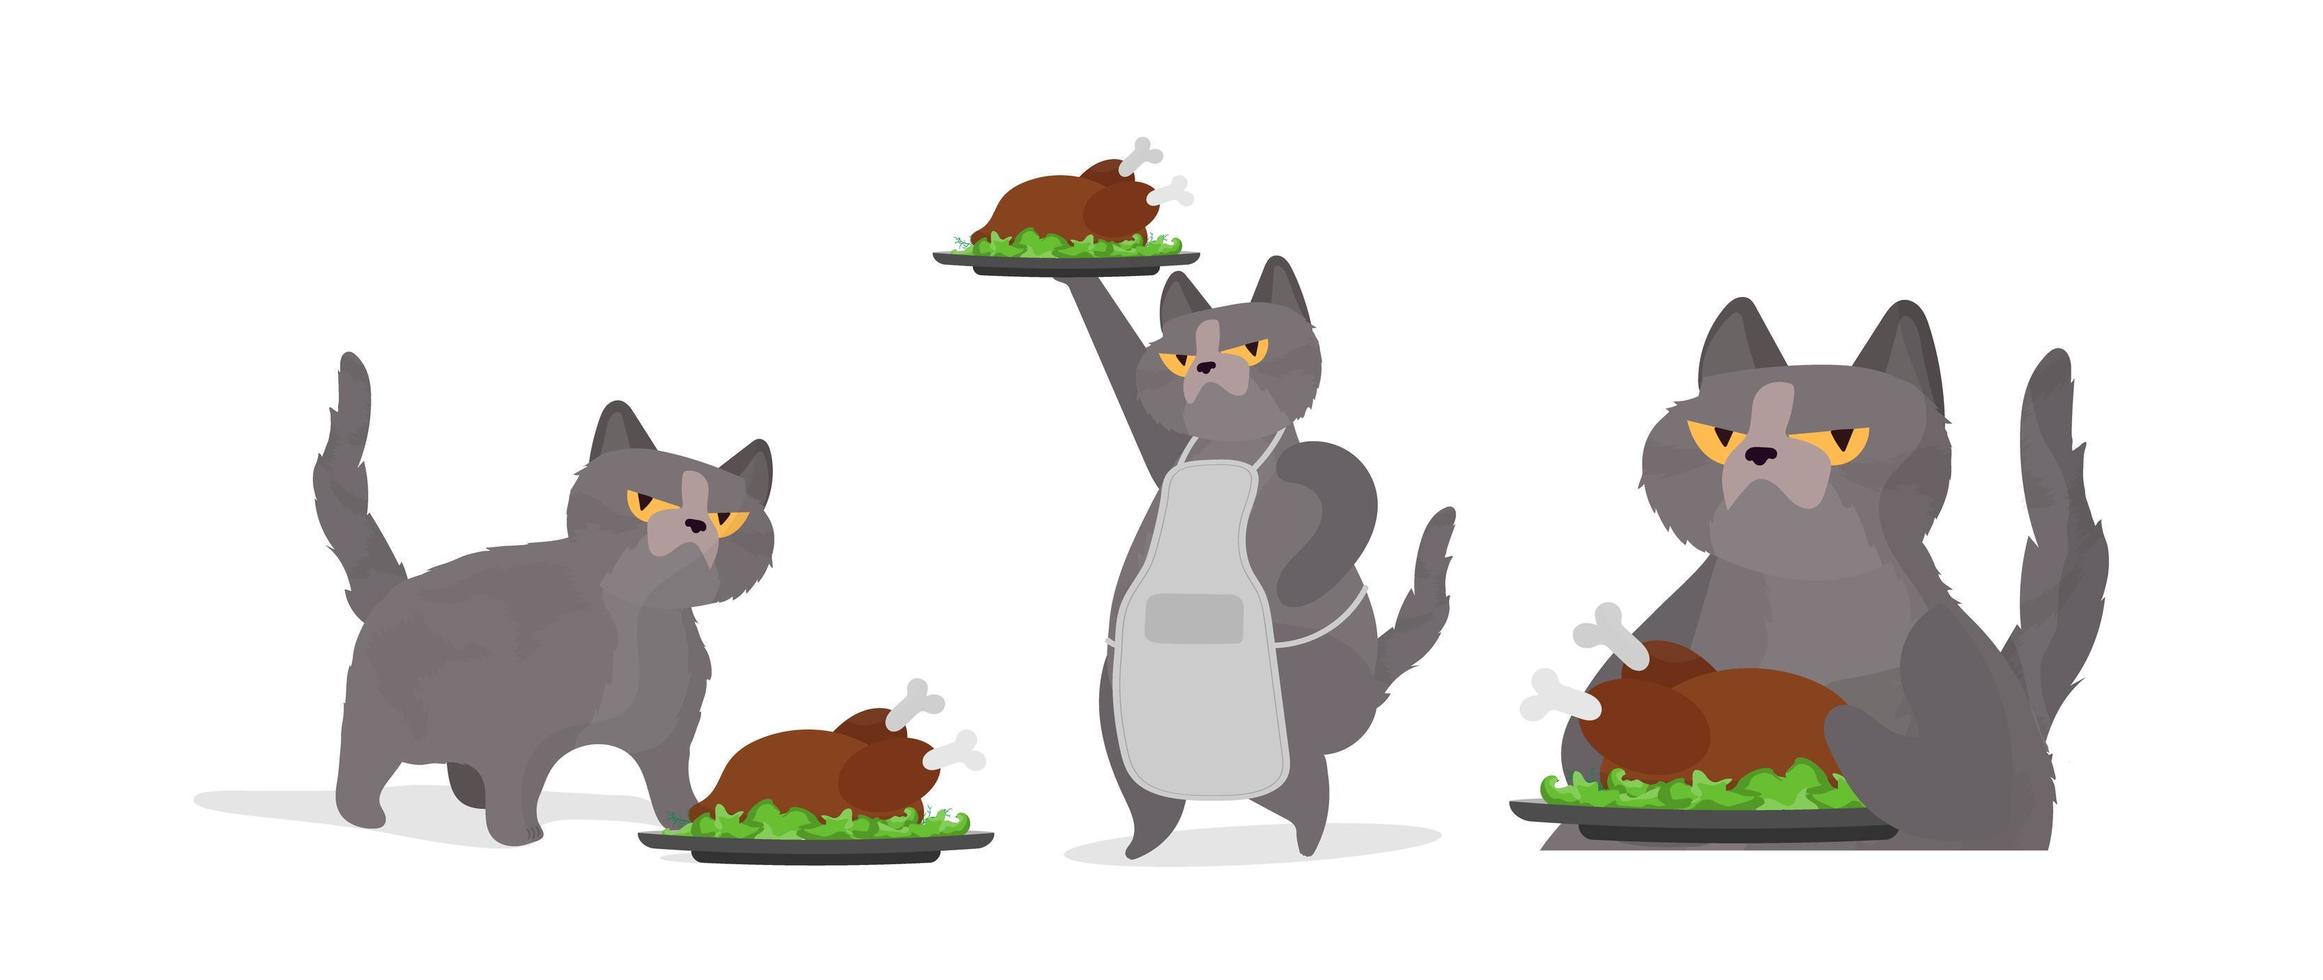 gracioso gato sostiene un pavo asado. un gato con una mirada divertida sostiene un pollo frito. bueno para pegatinas, tarjetas y camisetas. aislado. vector. vector